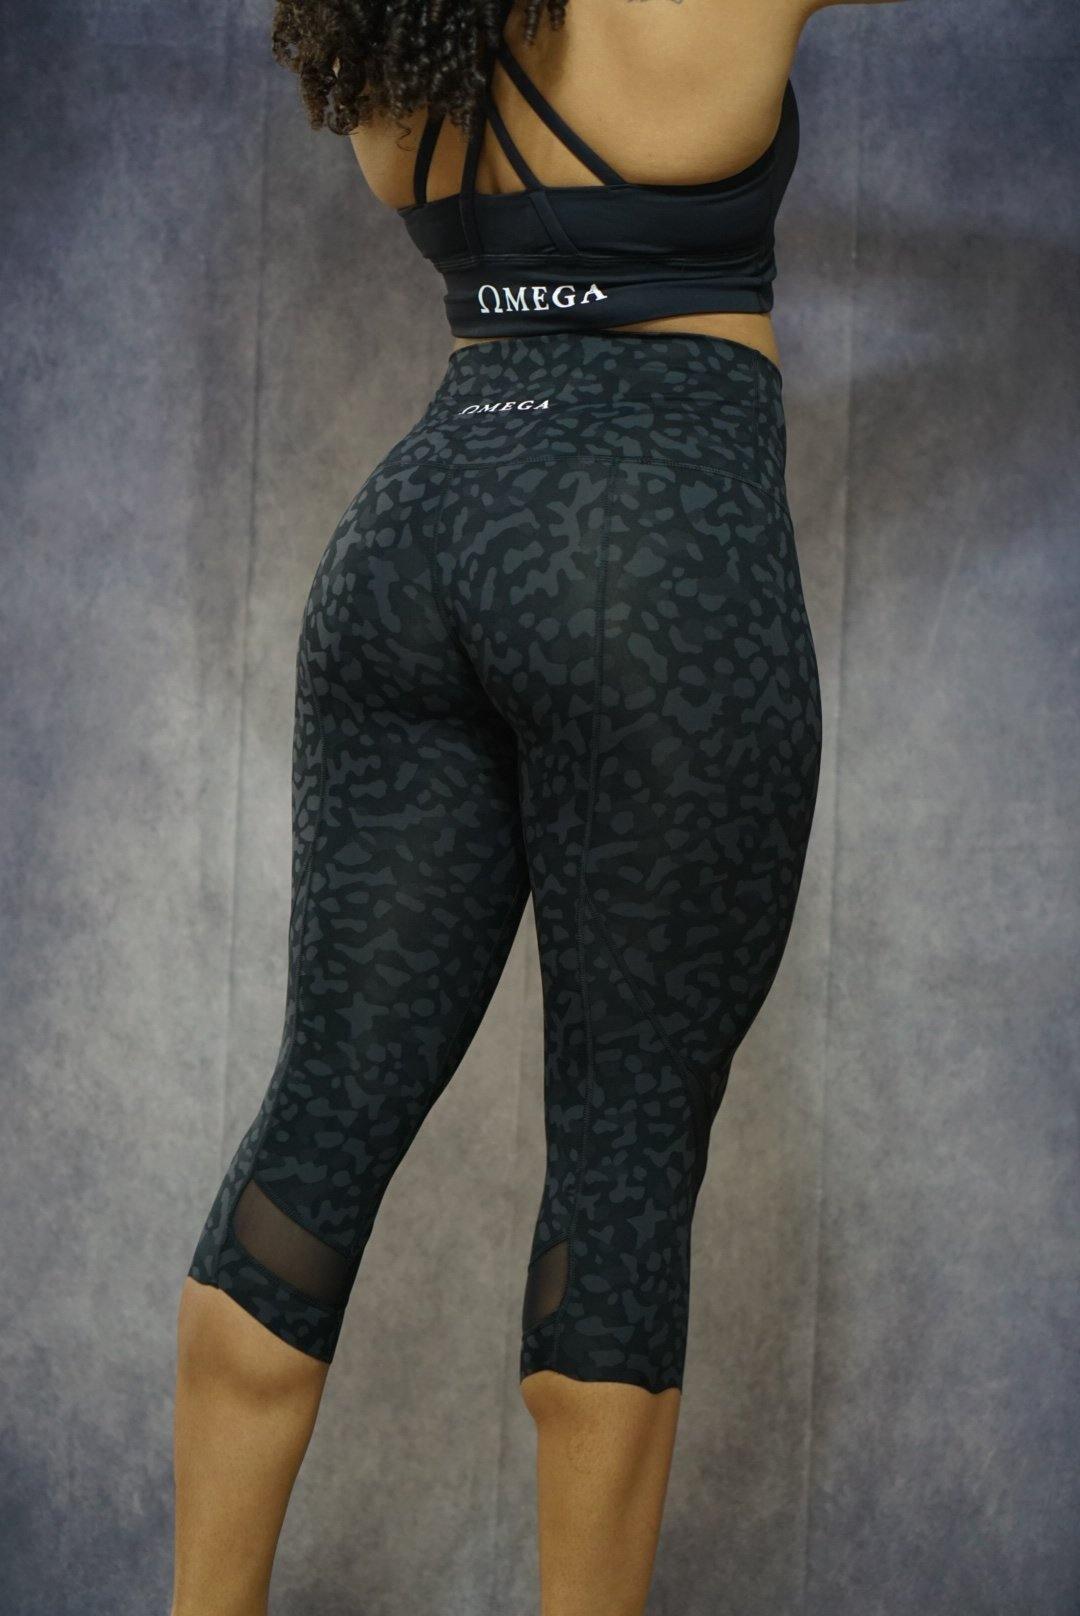 Breathless Leopard Capri Leggings – The Omega Fitness